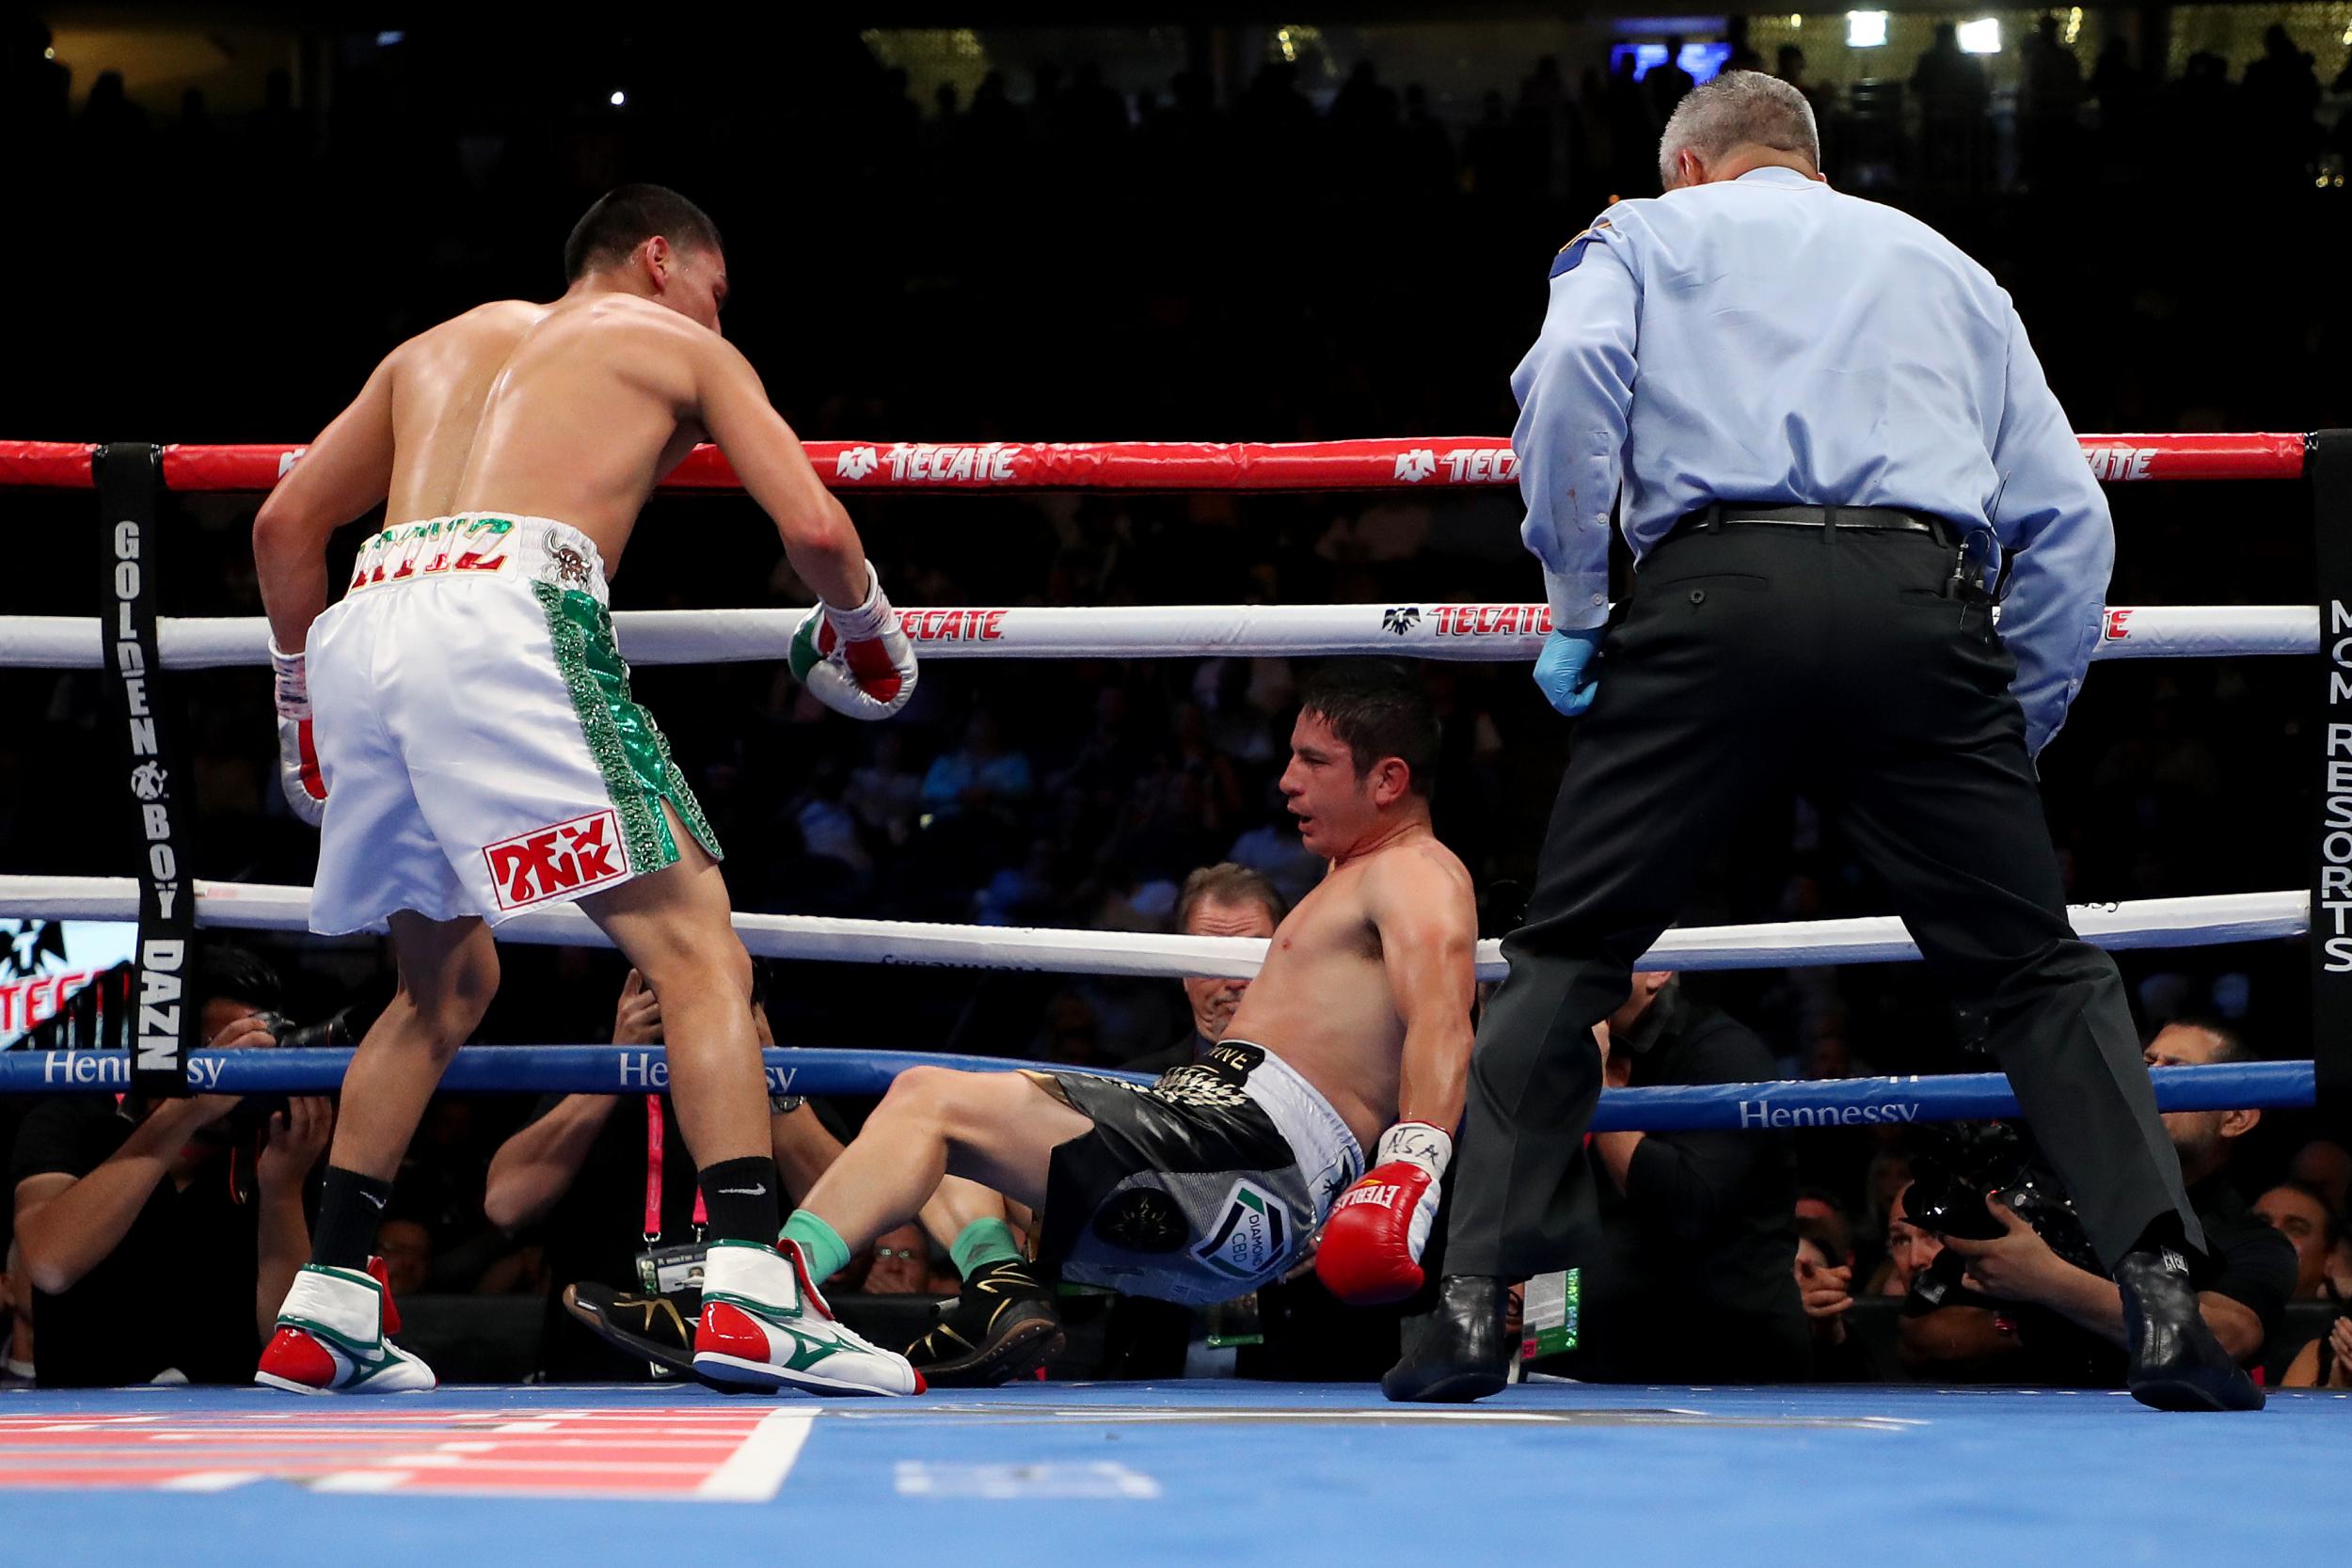 Vergil Ortiz Jr delivered a brutal knockout victory over Mauricio Herrera